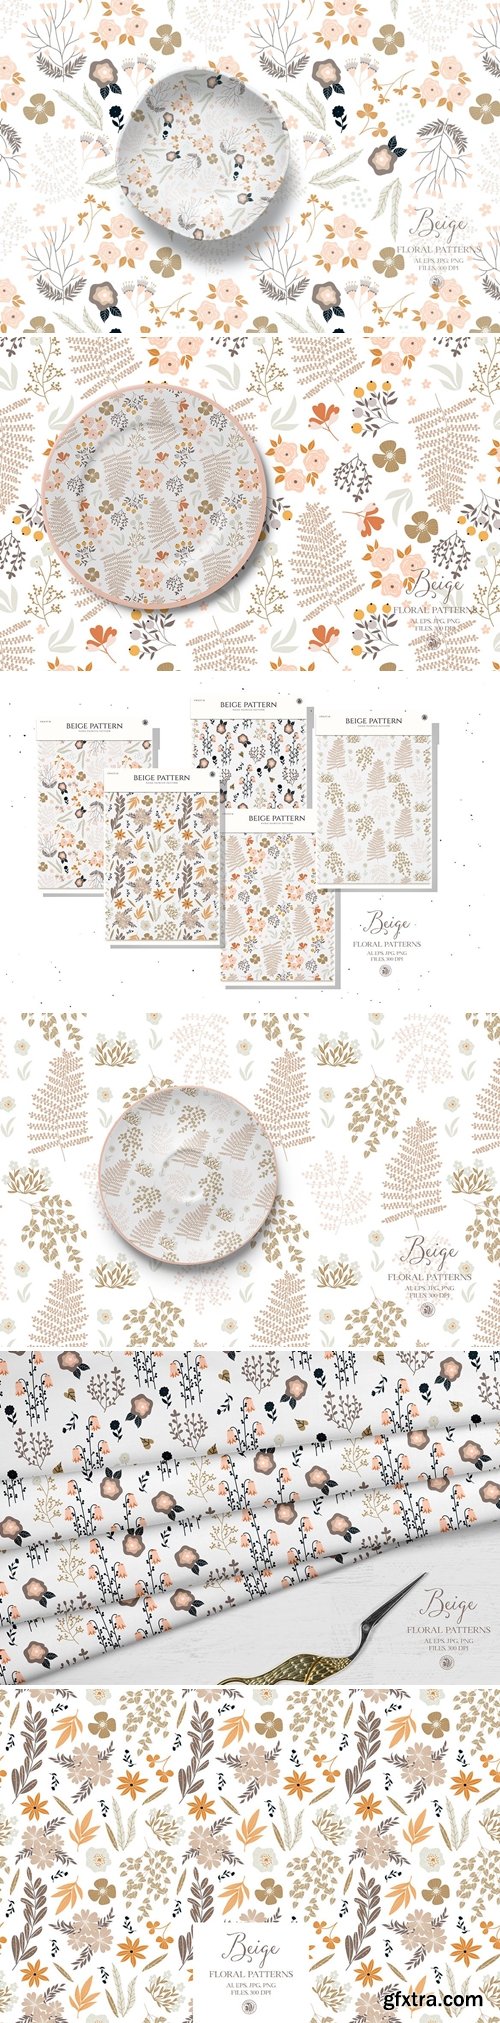 Beige floral patterns - vector set